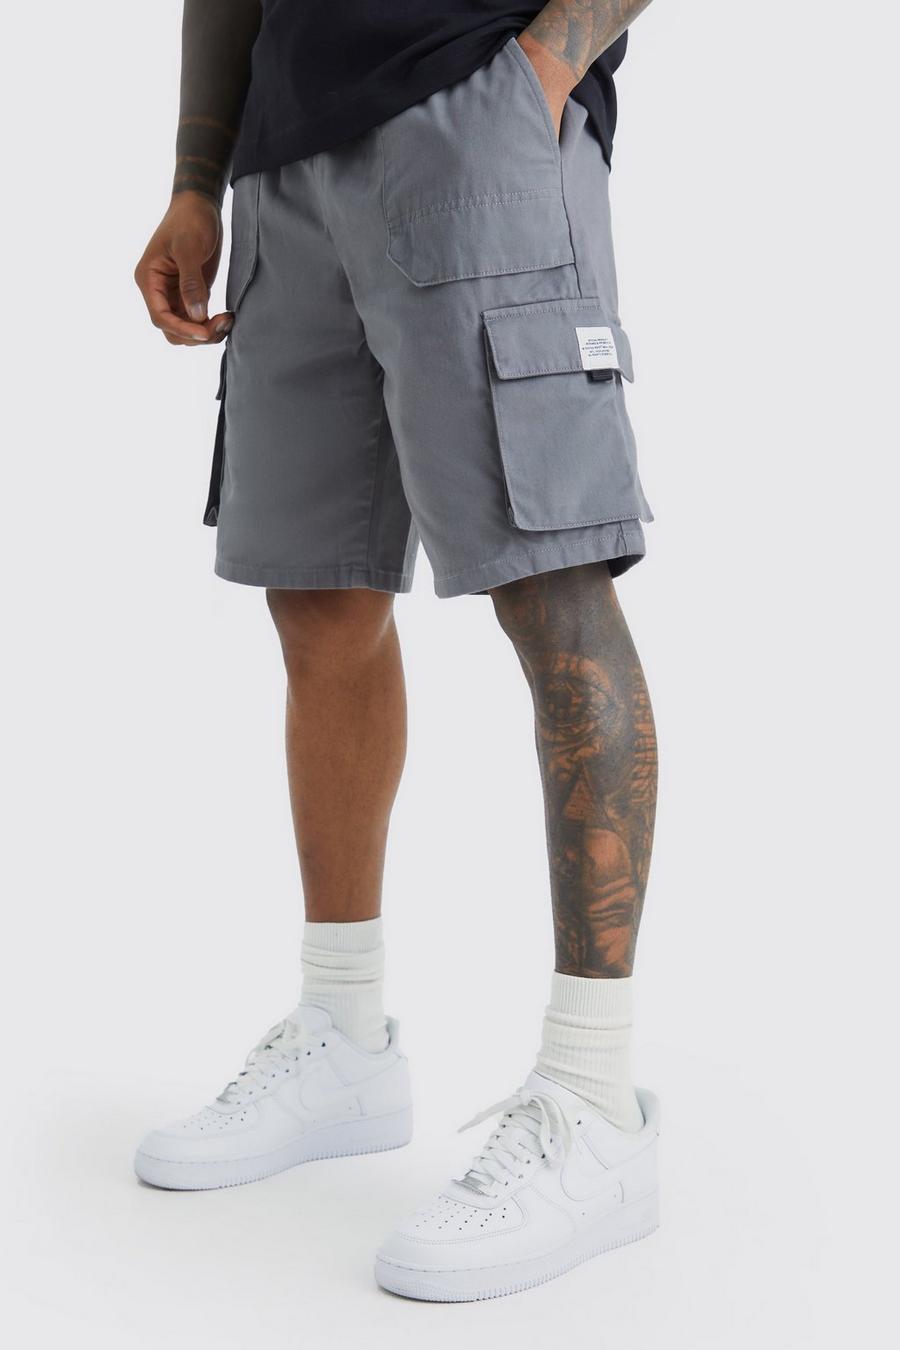 Pantalón corto cargo holgado elástico con etiqueta, Charcoal